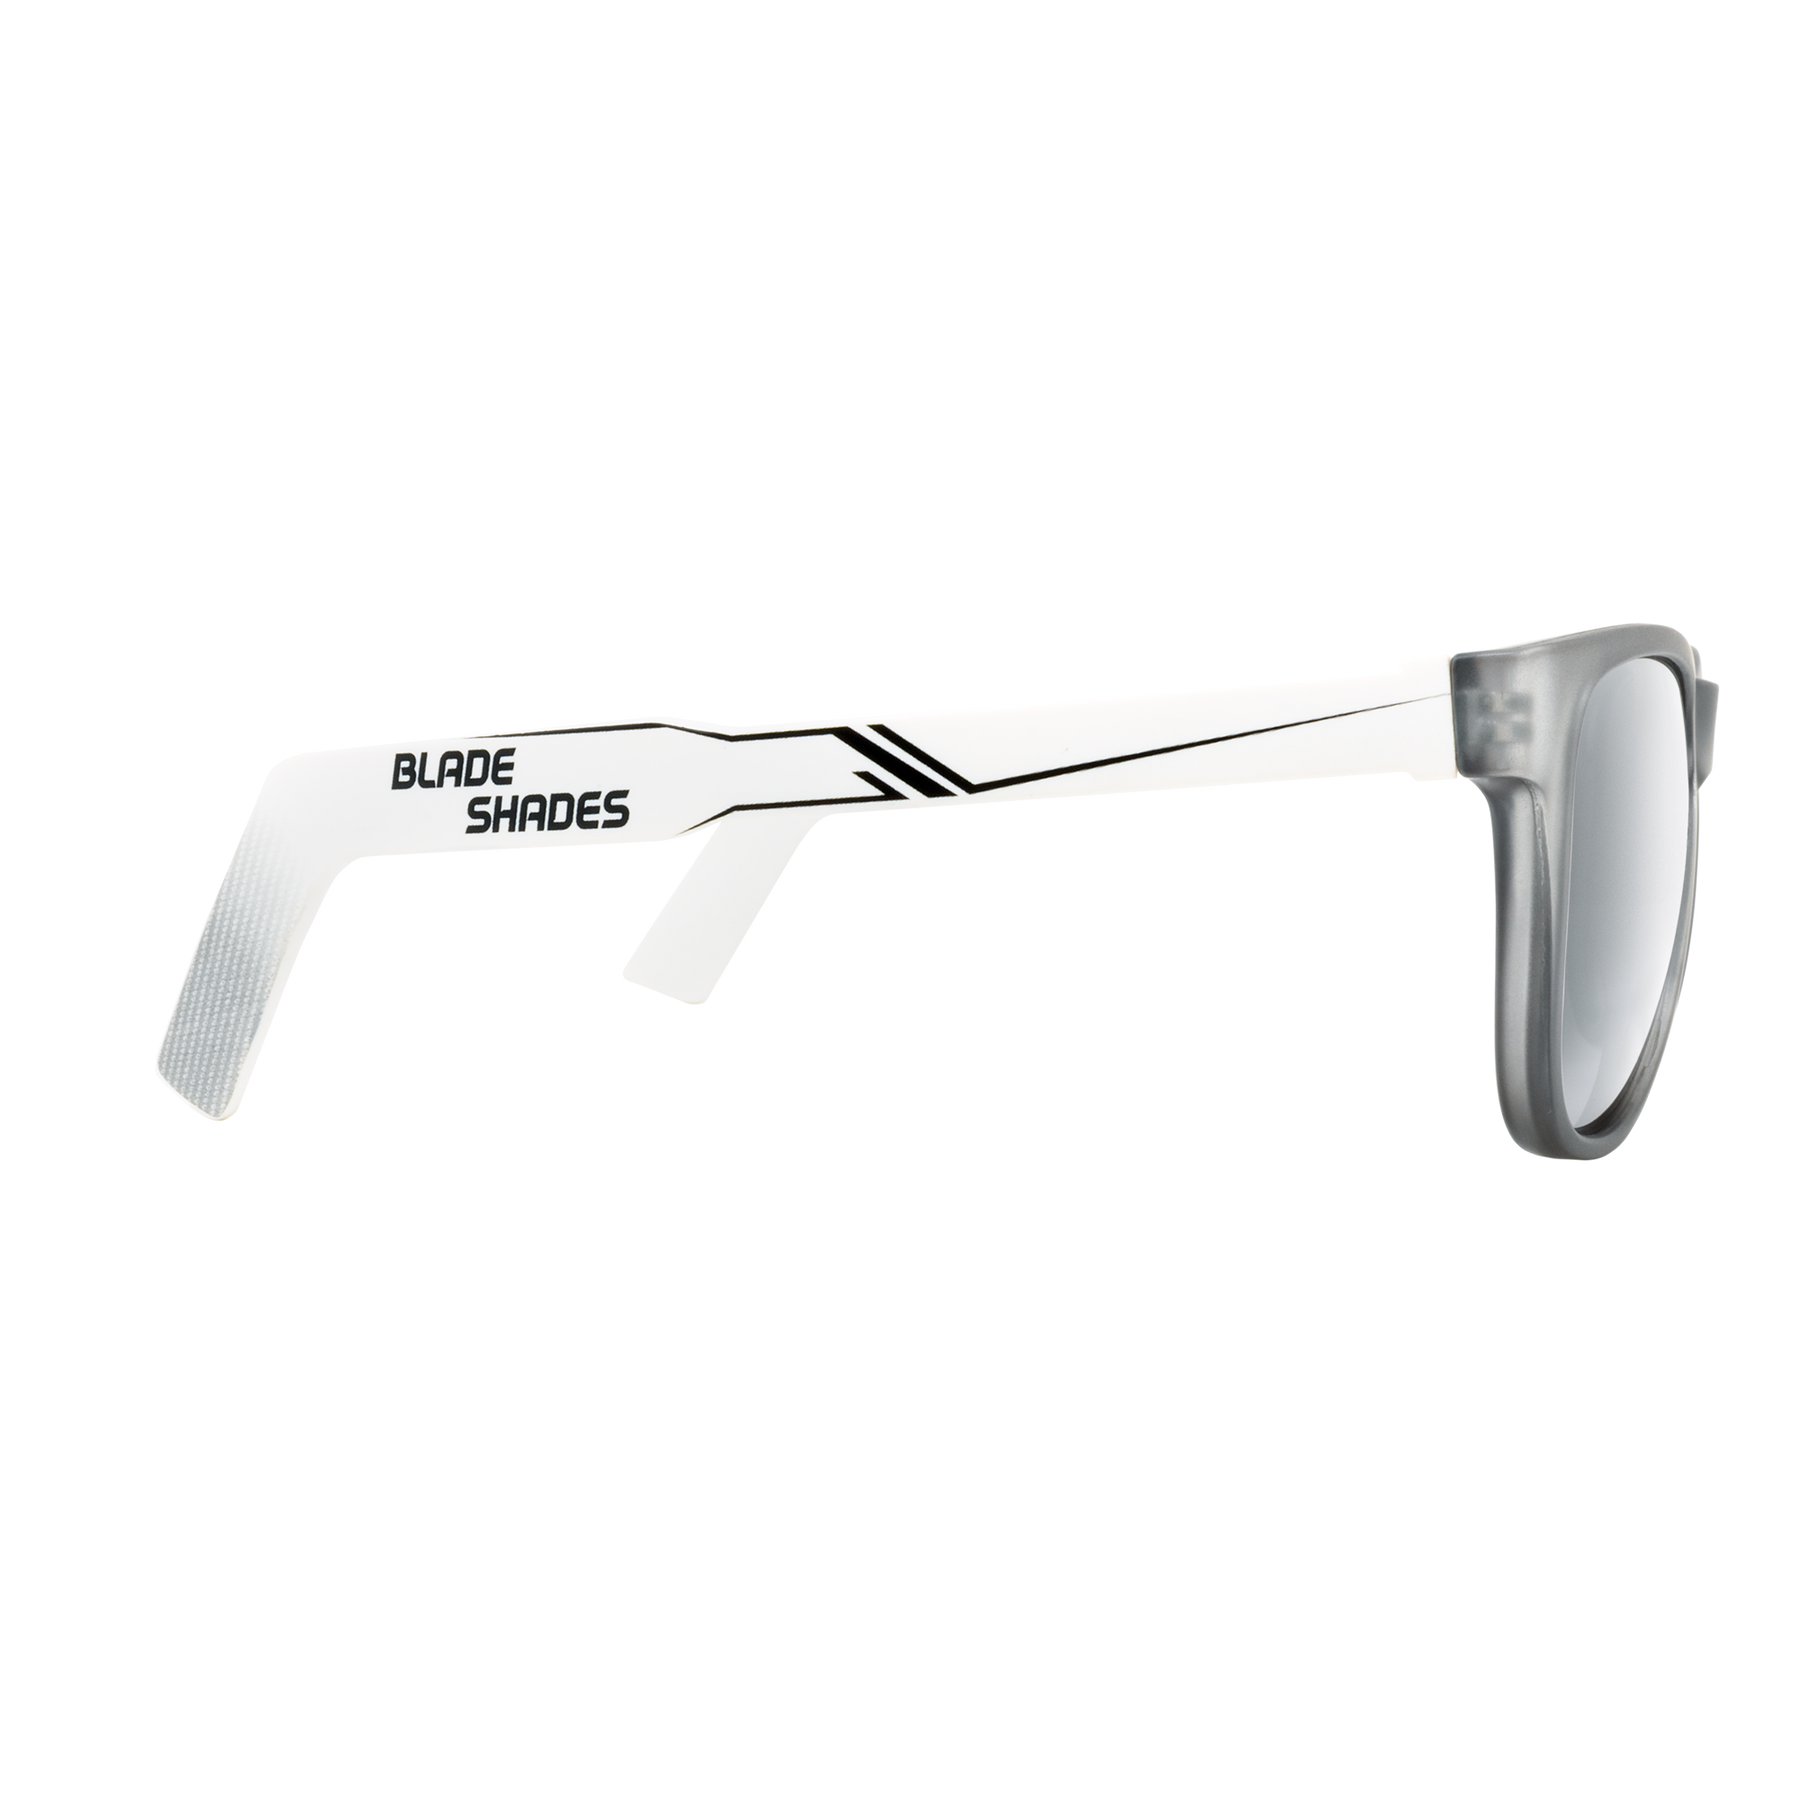 Goalie Glasses - White  Non-Detachable